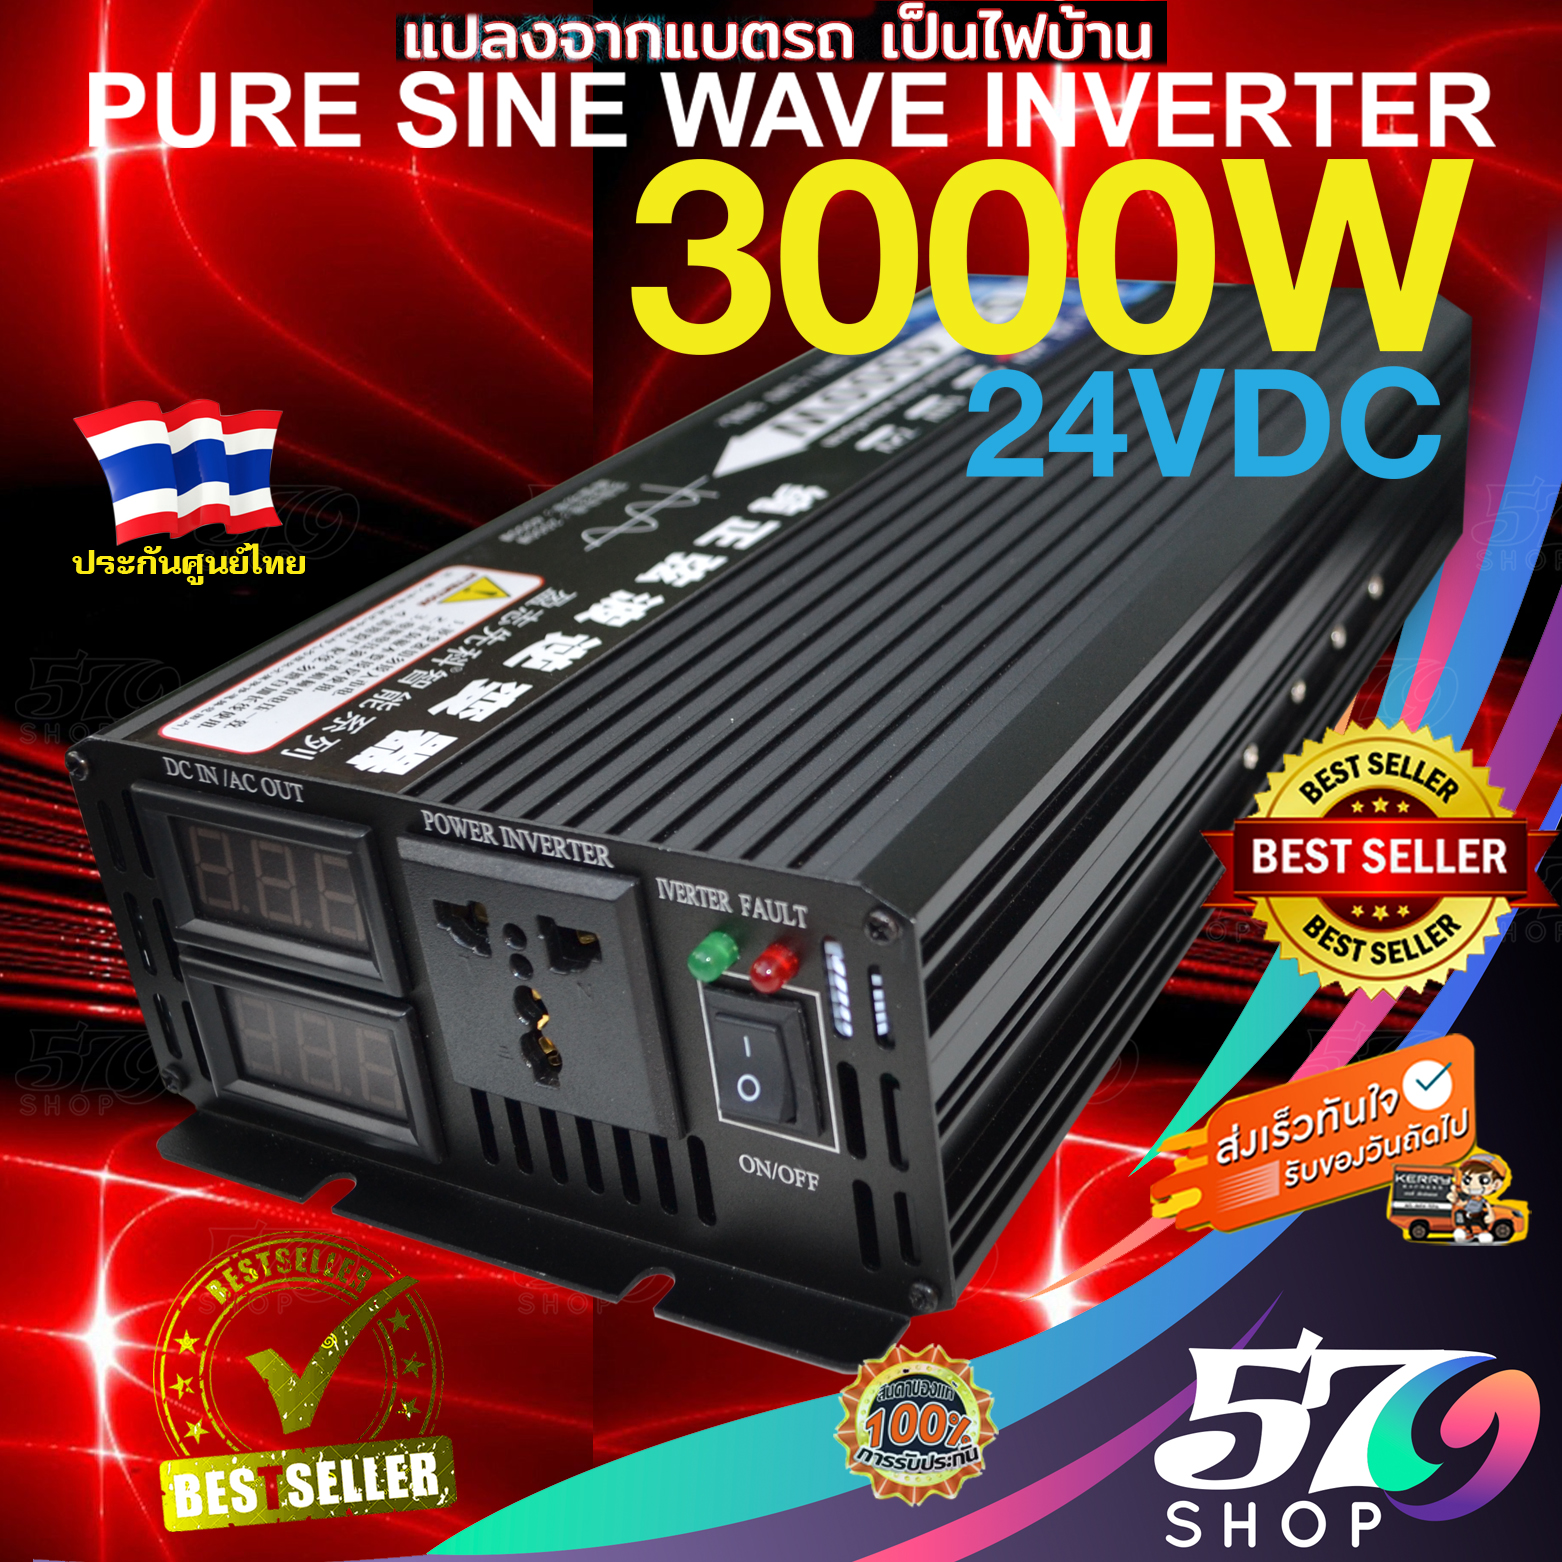 อินเวอร์เตอร์ 3000W รุ่น 24V Inverter Pure Sine Wave อินเวอร์เตอร์ เพียวไซน์เวฟ ล้าน% แปลงไฟแบตเตอรี่เป็นไฟฟ้าบ้าน 220V